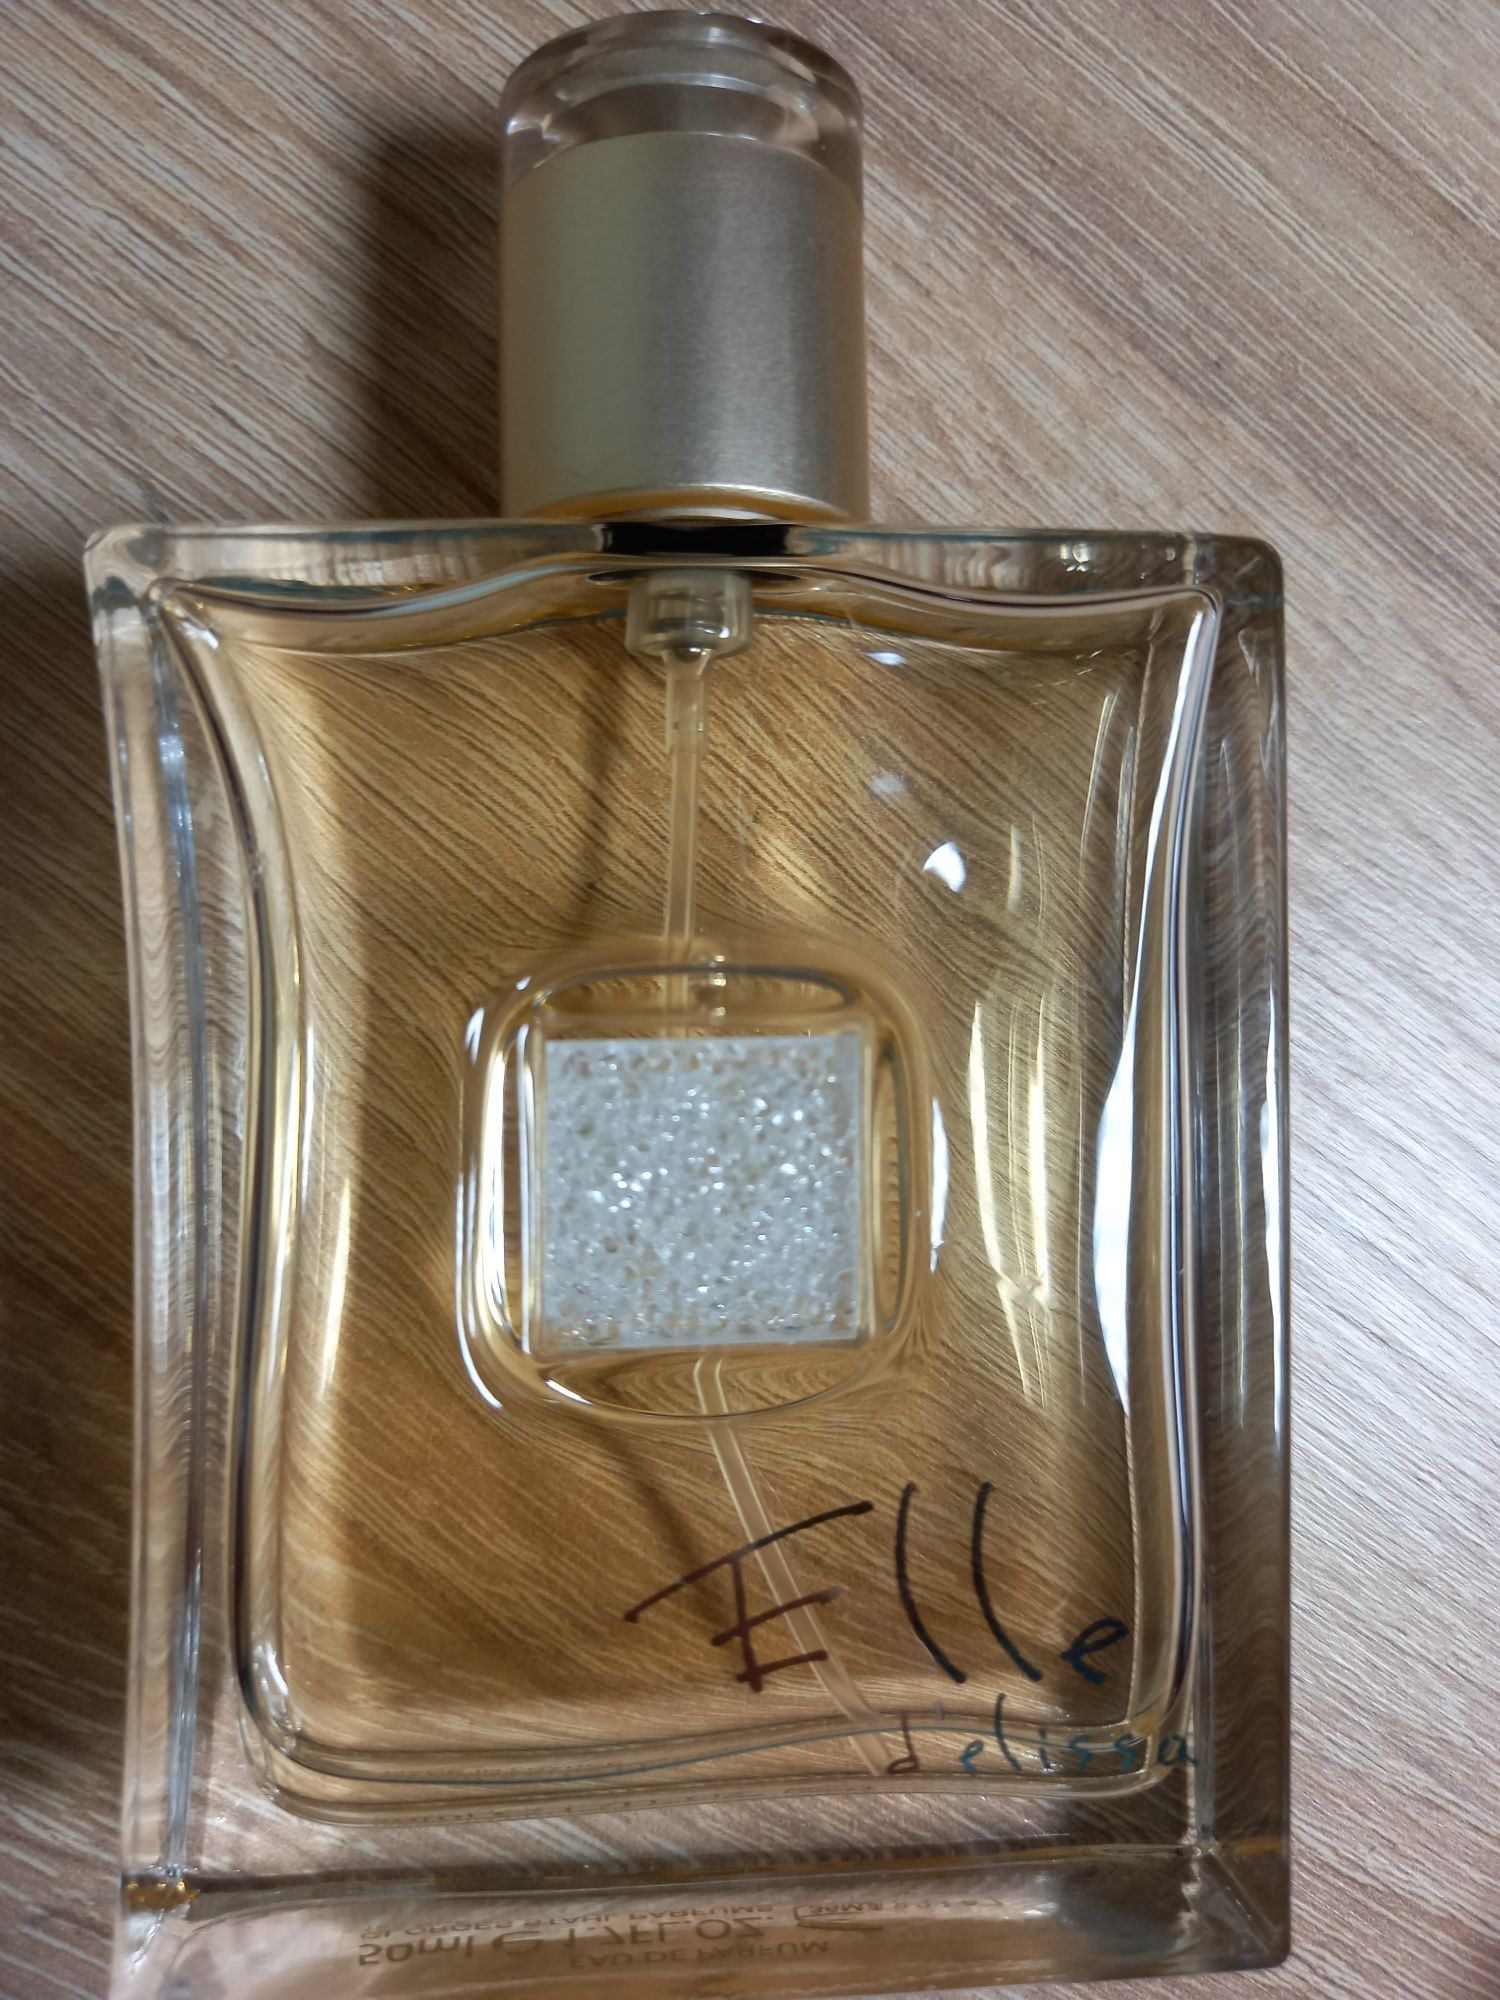 Духи парфюмы Elle d'Elissa